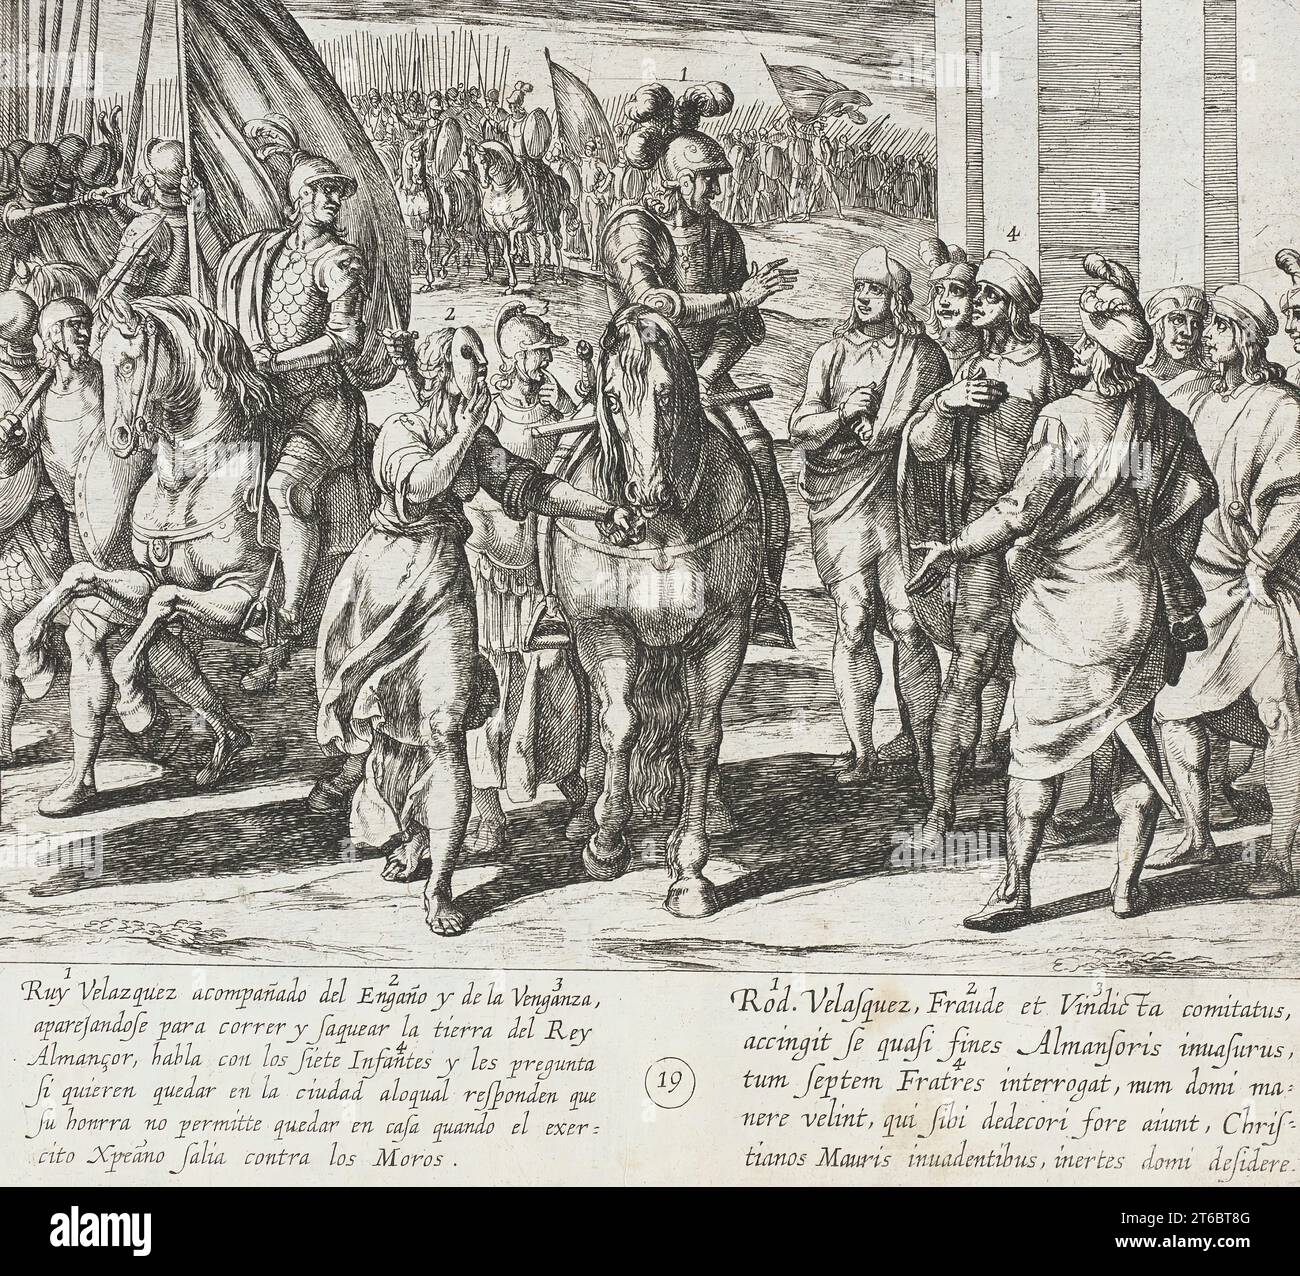 Die Infanten bieten an, Ruy Velazquez bei seiner Kampagne gegen die Mauren 1612 zu begleiten. Aus der Geschichte der sieben Söhne von Lara, Pl. 19. Stockfoto